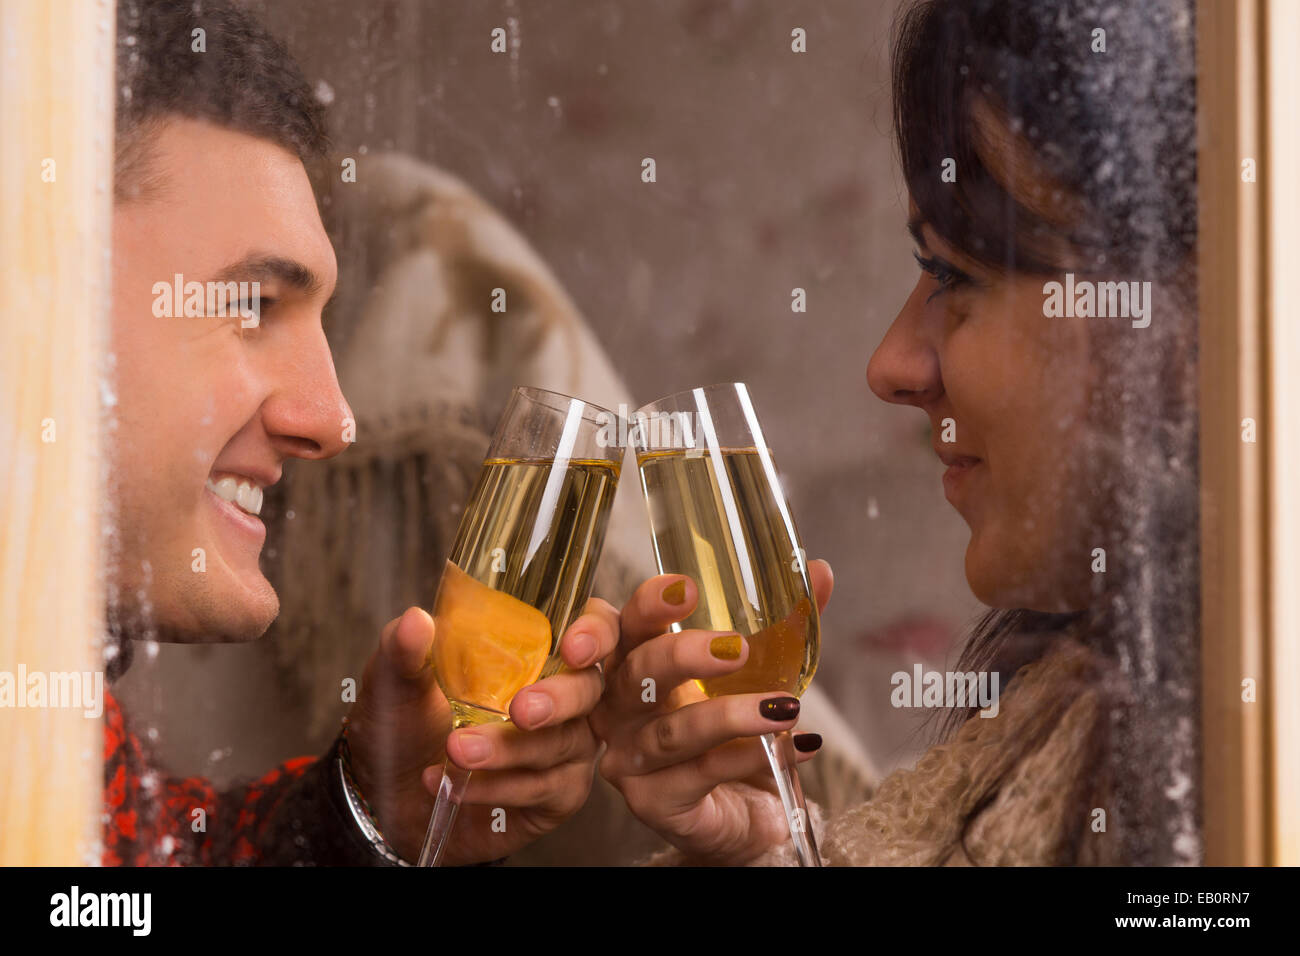 Blick durch mattierte Fensterscheiben von einer jungen Sweethearts mit Champagner klirrende Gläser zu feiern, wie sie in jeder Oth Lächeln Stockfoto